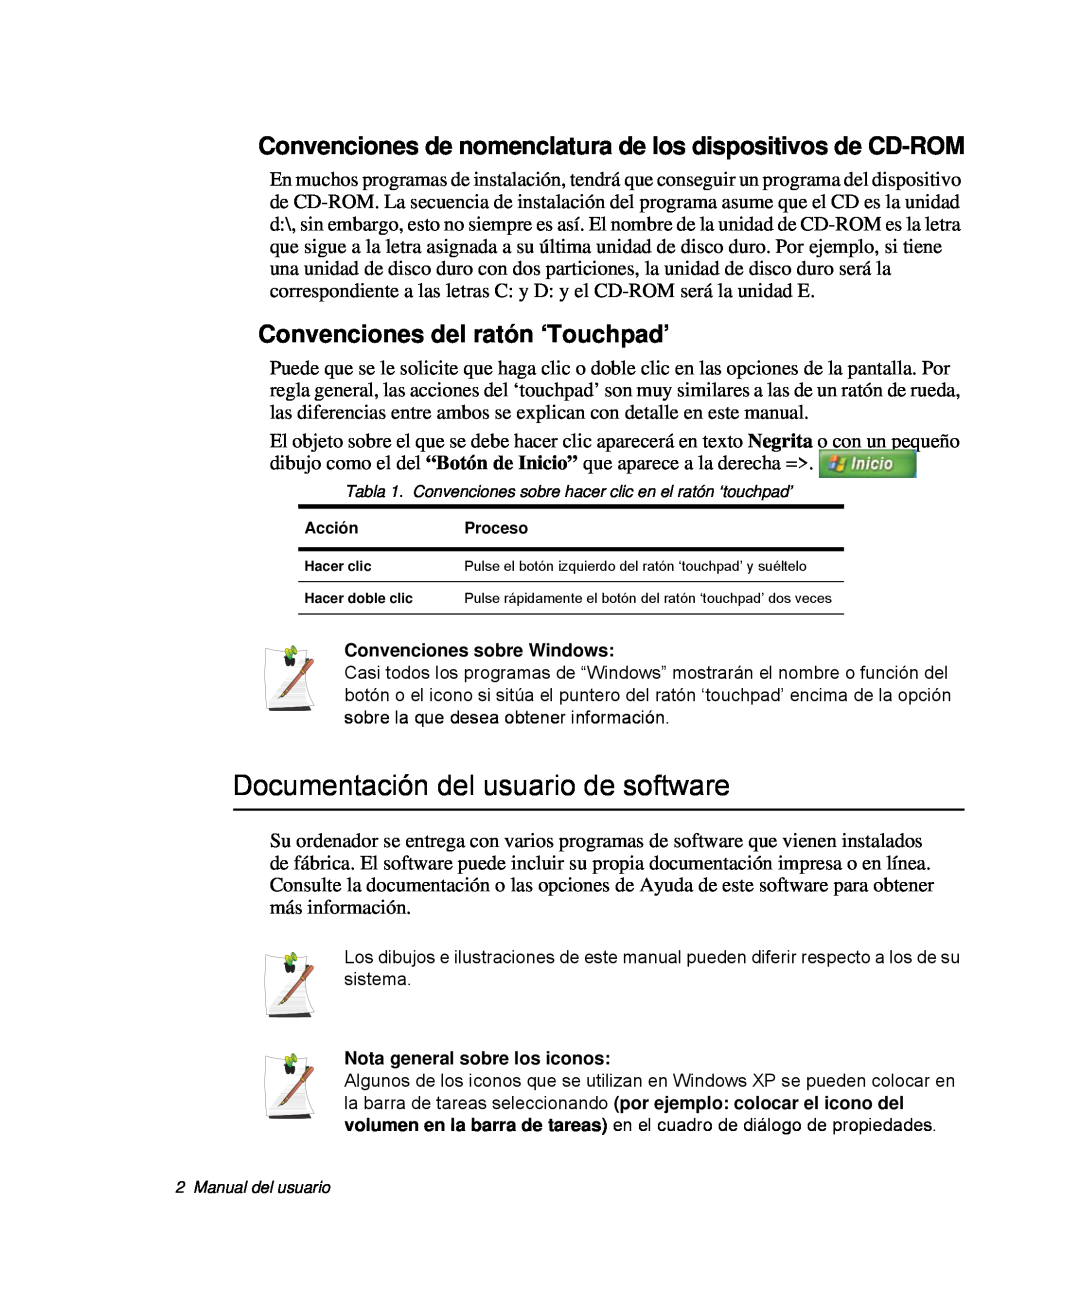 Samsung NP-Q30TY01/SES Documentación del usuario de software, Convenciones de nomenclatura de los dispositivos de CD-ROM 